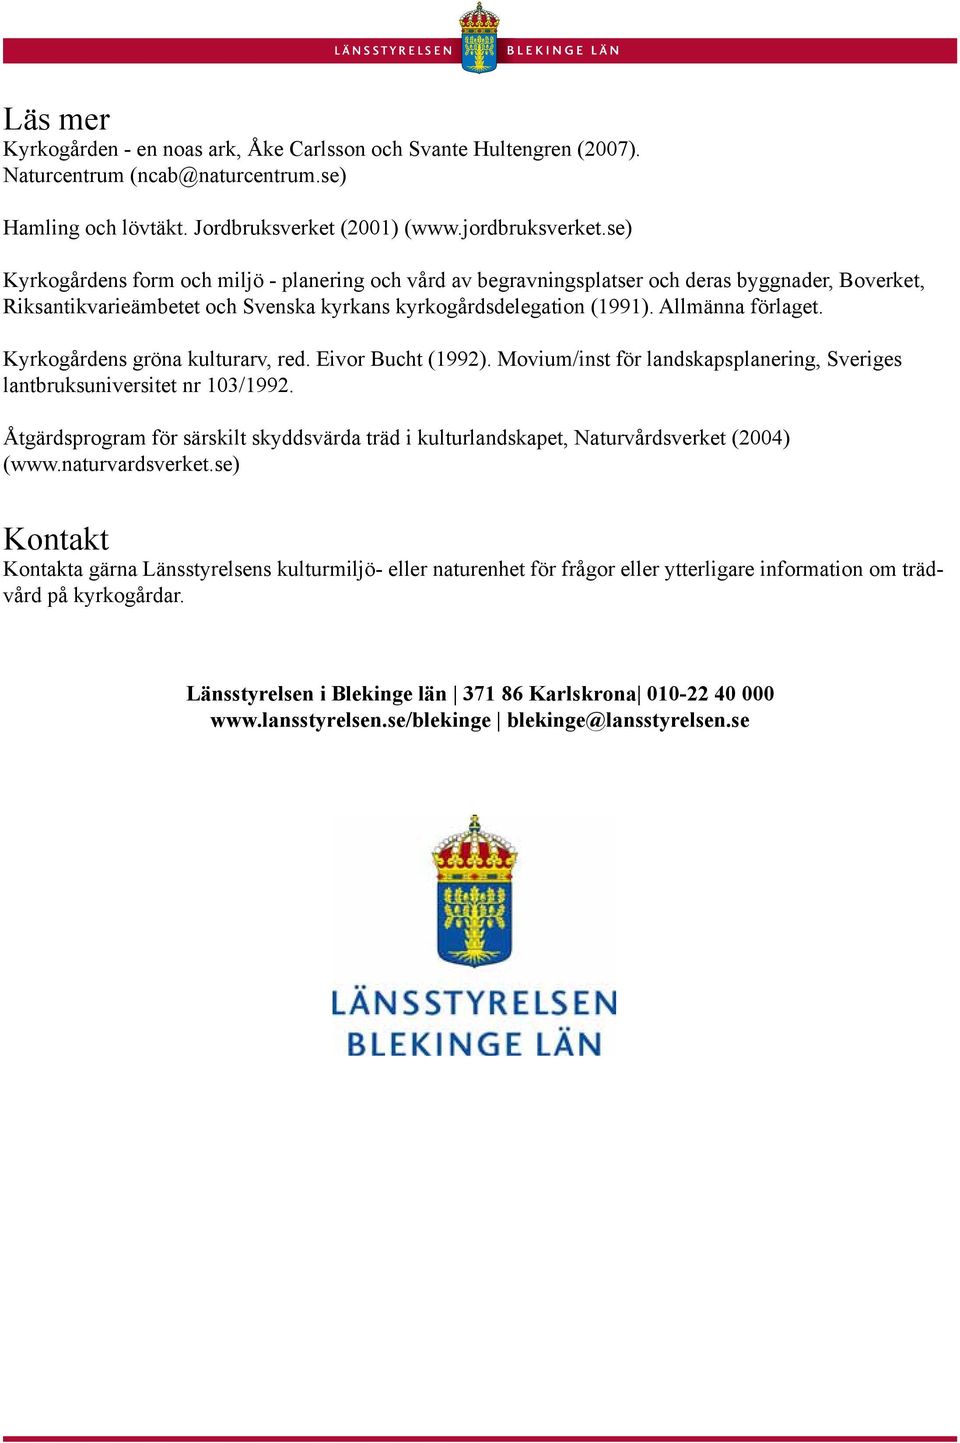 Kyrkogårdens gröna kulturarv, red. Eivor Bucht (1992). Movium/inst för landskapsplanering, Sveriges lantbruksuniversitet nr 103/1992.